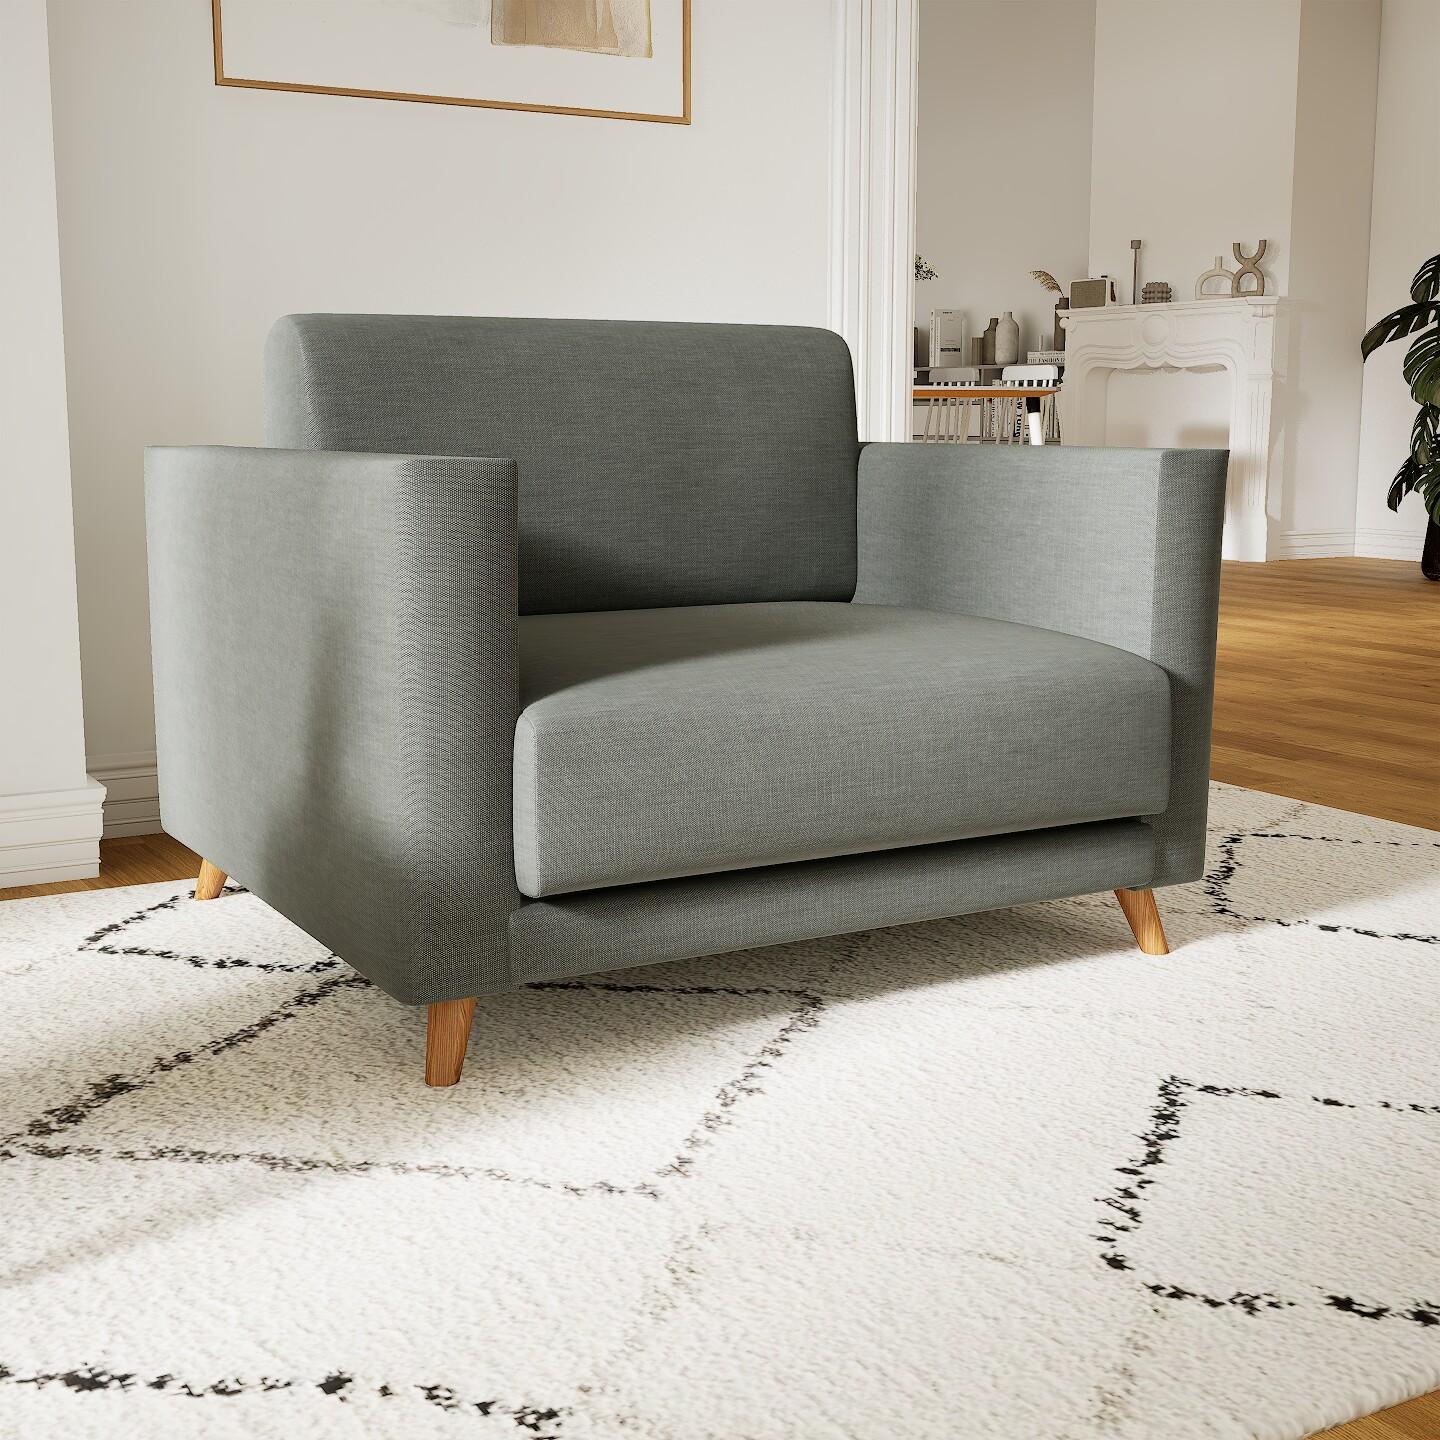 Sessel Kiesgrau - Eleganter Sessel: Hochwertige Qualität, einzigartiges Design - 105 x 75 x 98 cm, Individuell konfigurierbar von MYCS